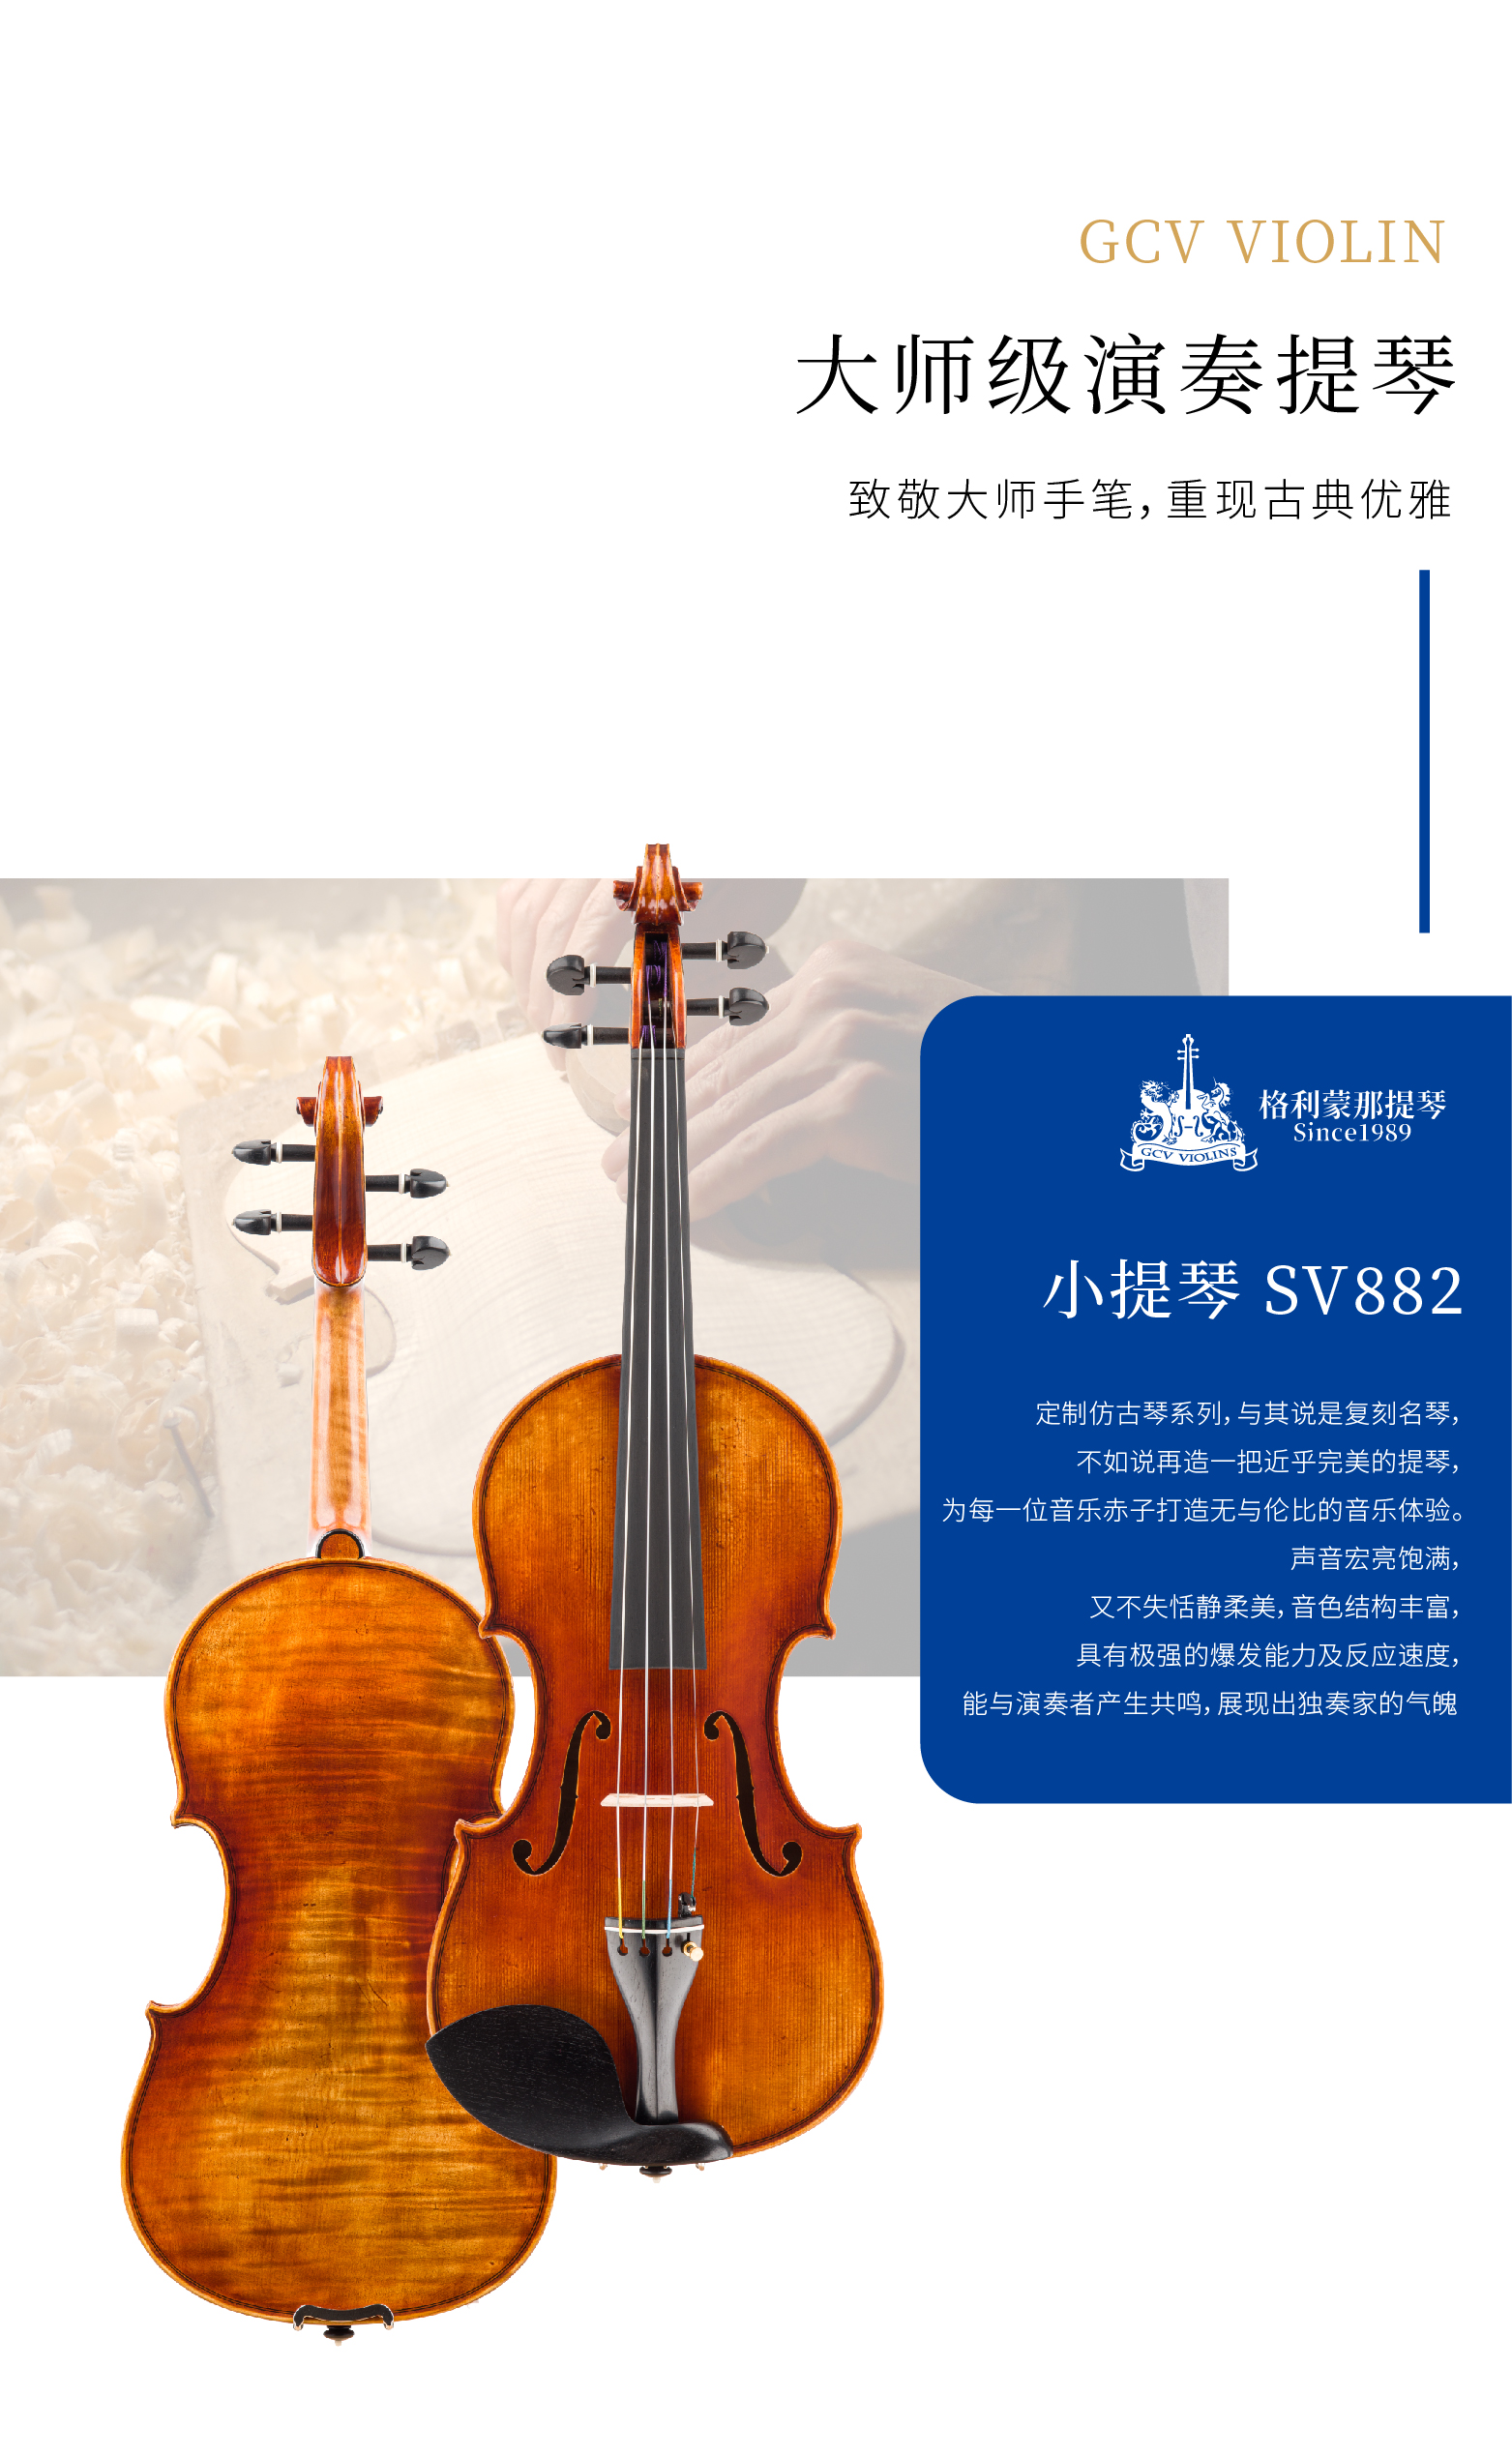 熙珑乐器专营店-详情-v1-2_SV882小提琴_复制_PC-副本-2_02.png